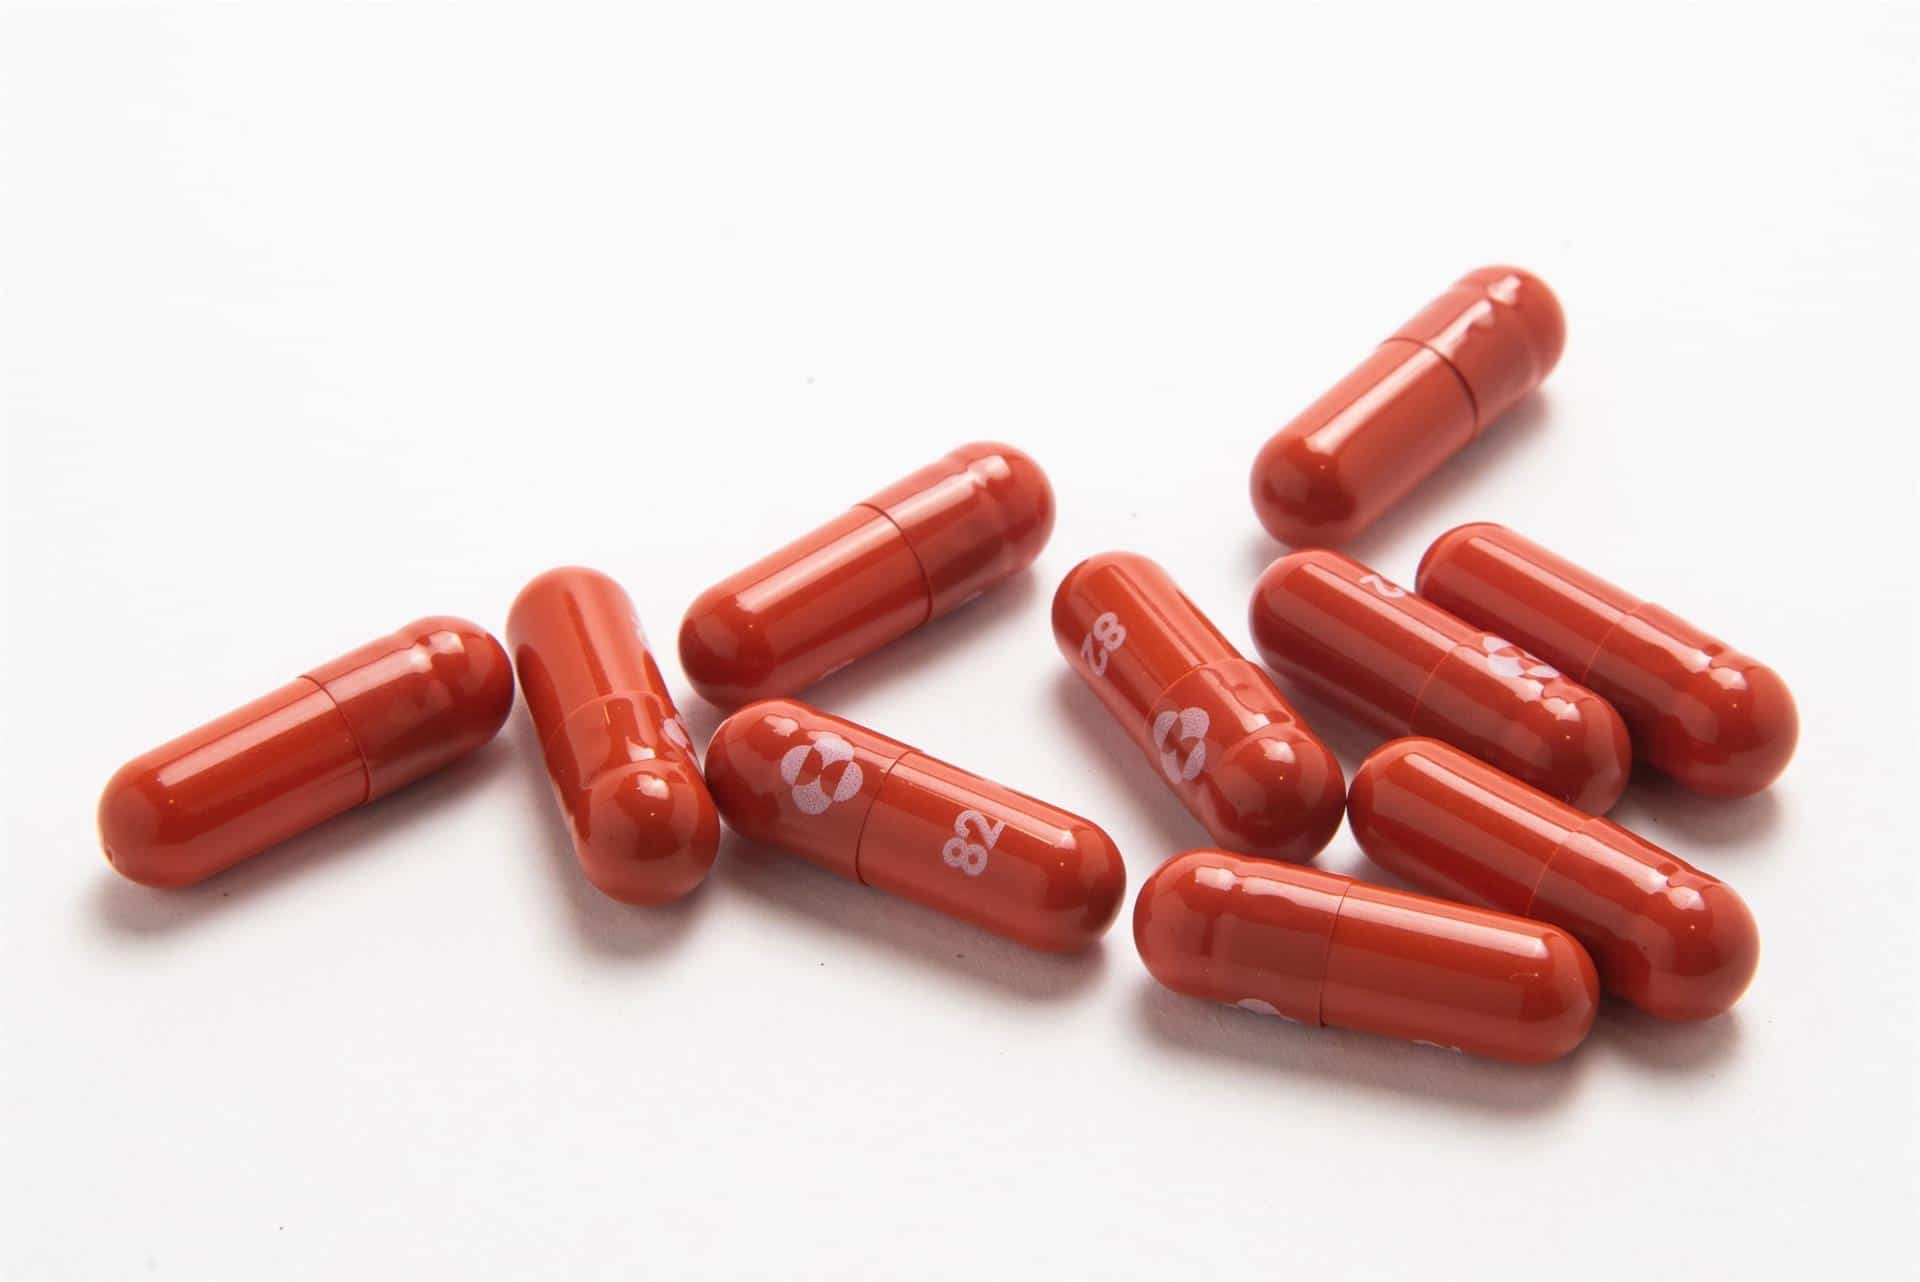 Merck solicita uso de emergencia de su pastilla contra covid